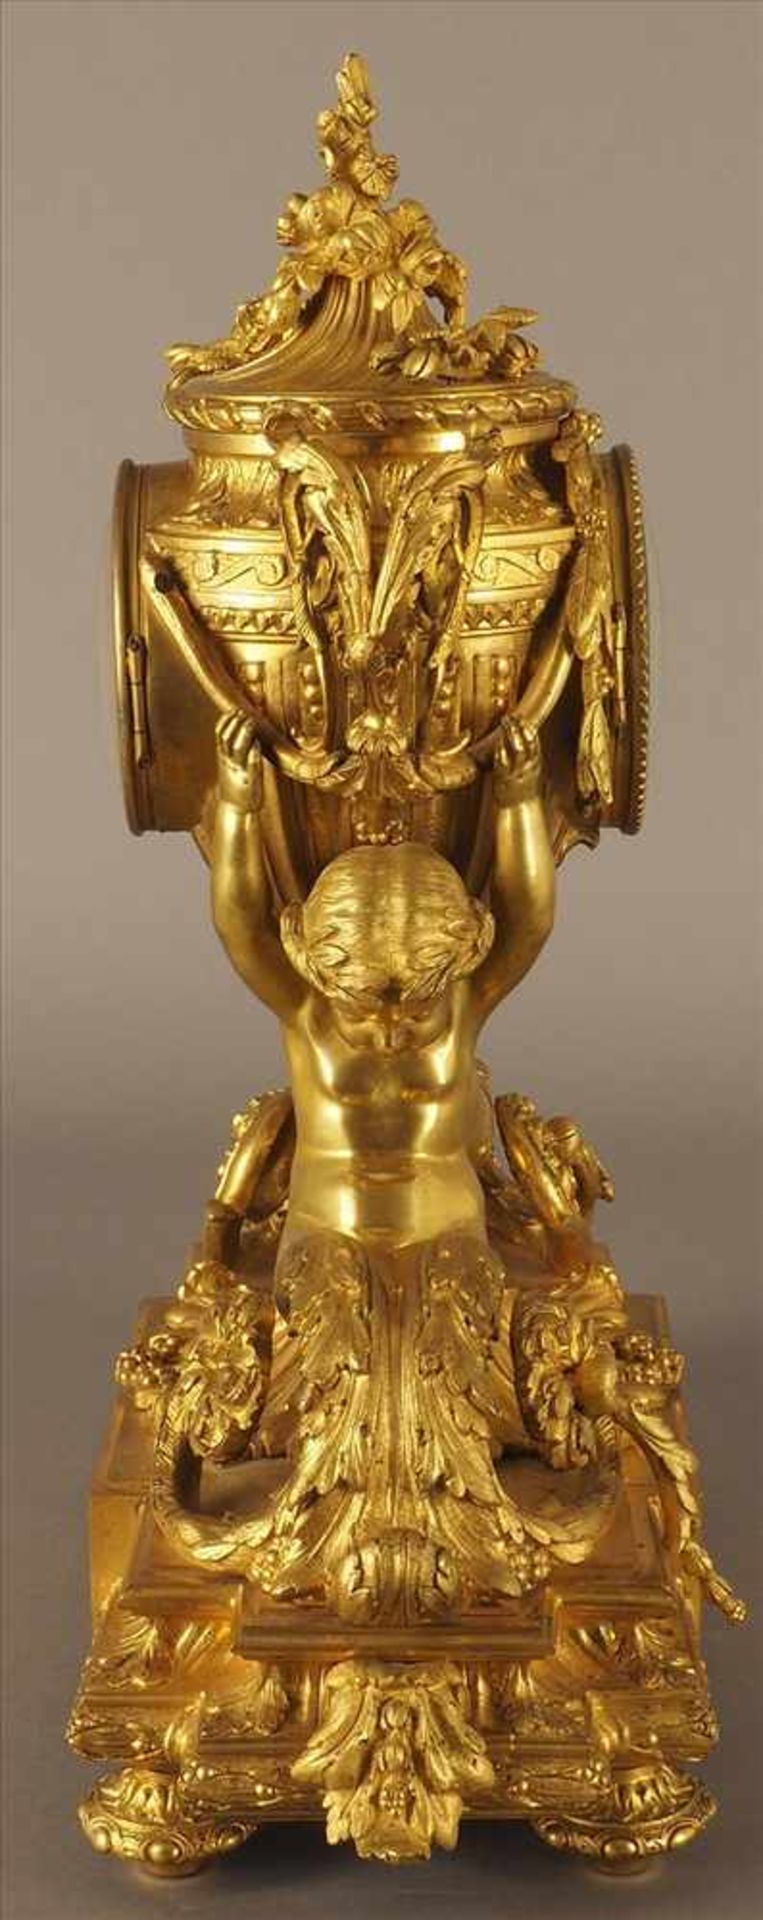 Feuervergoldete PrunkuhrVon Putten getragen, Bronze, feuervergoldet, 19.Jh., Pendel fehlt, Uhrwerk - Bild 3 aus 5